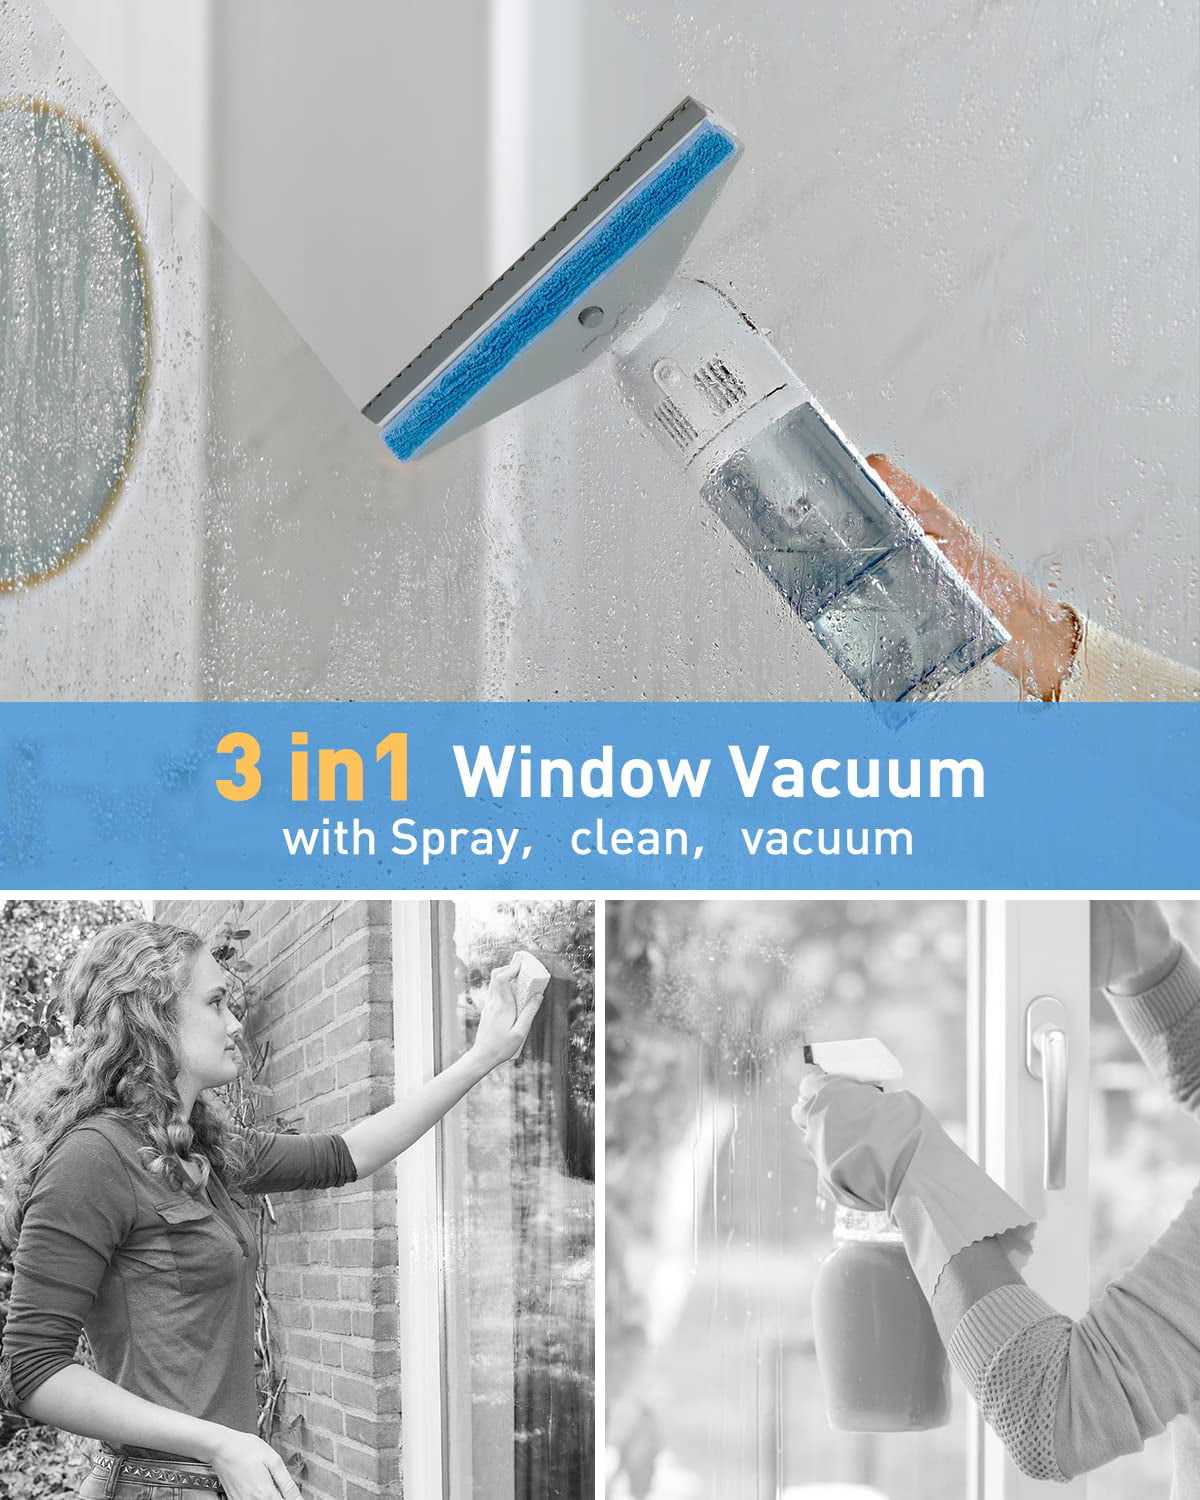  Window Vacuum